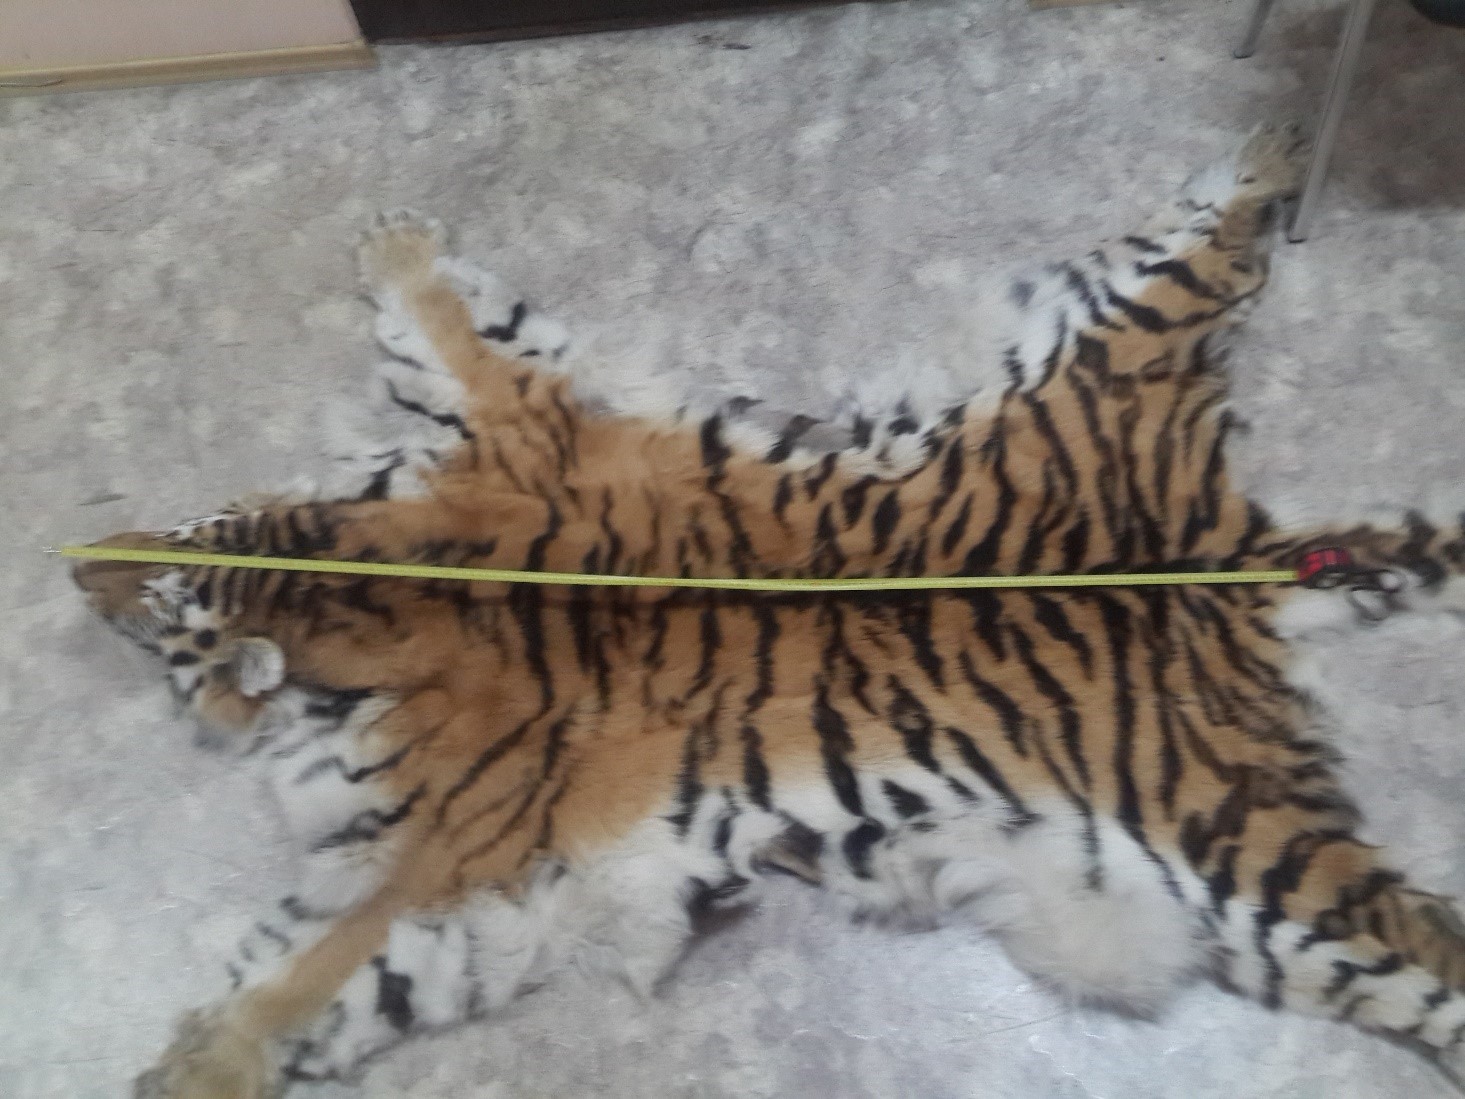 За попытку сбыта шкуры амурского тигра могут понести наказание четверо жителей Приморского края